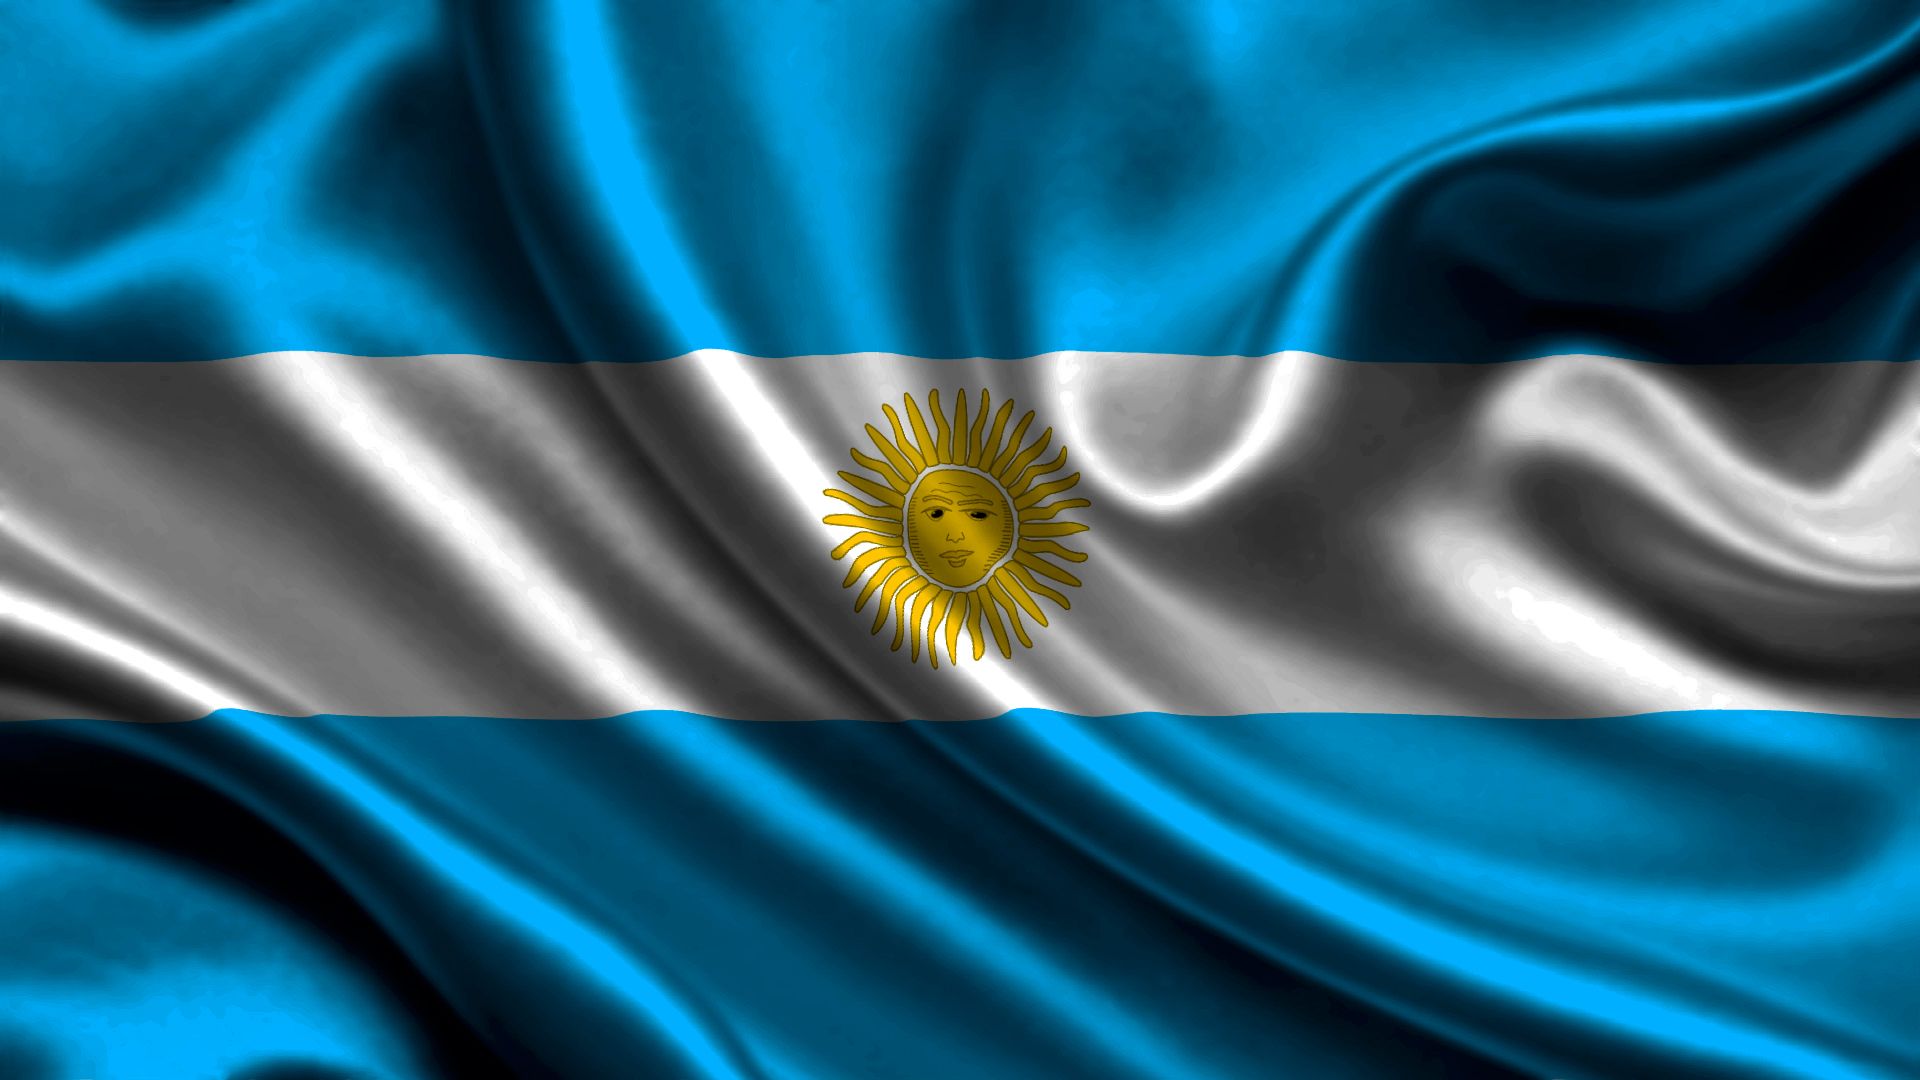 Популярные заставки и фоны Флаг Аргентины на компьютер